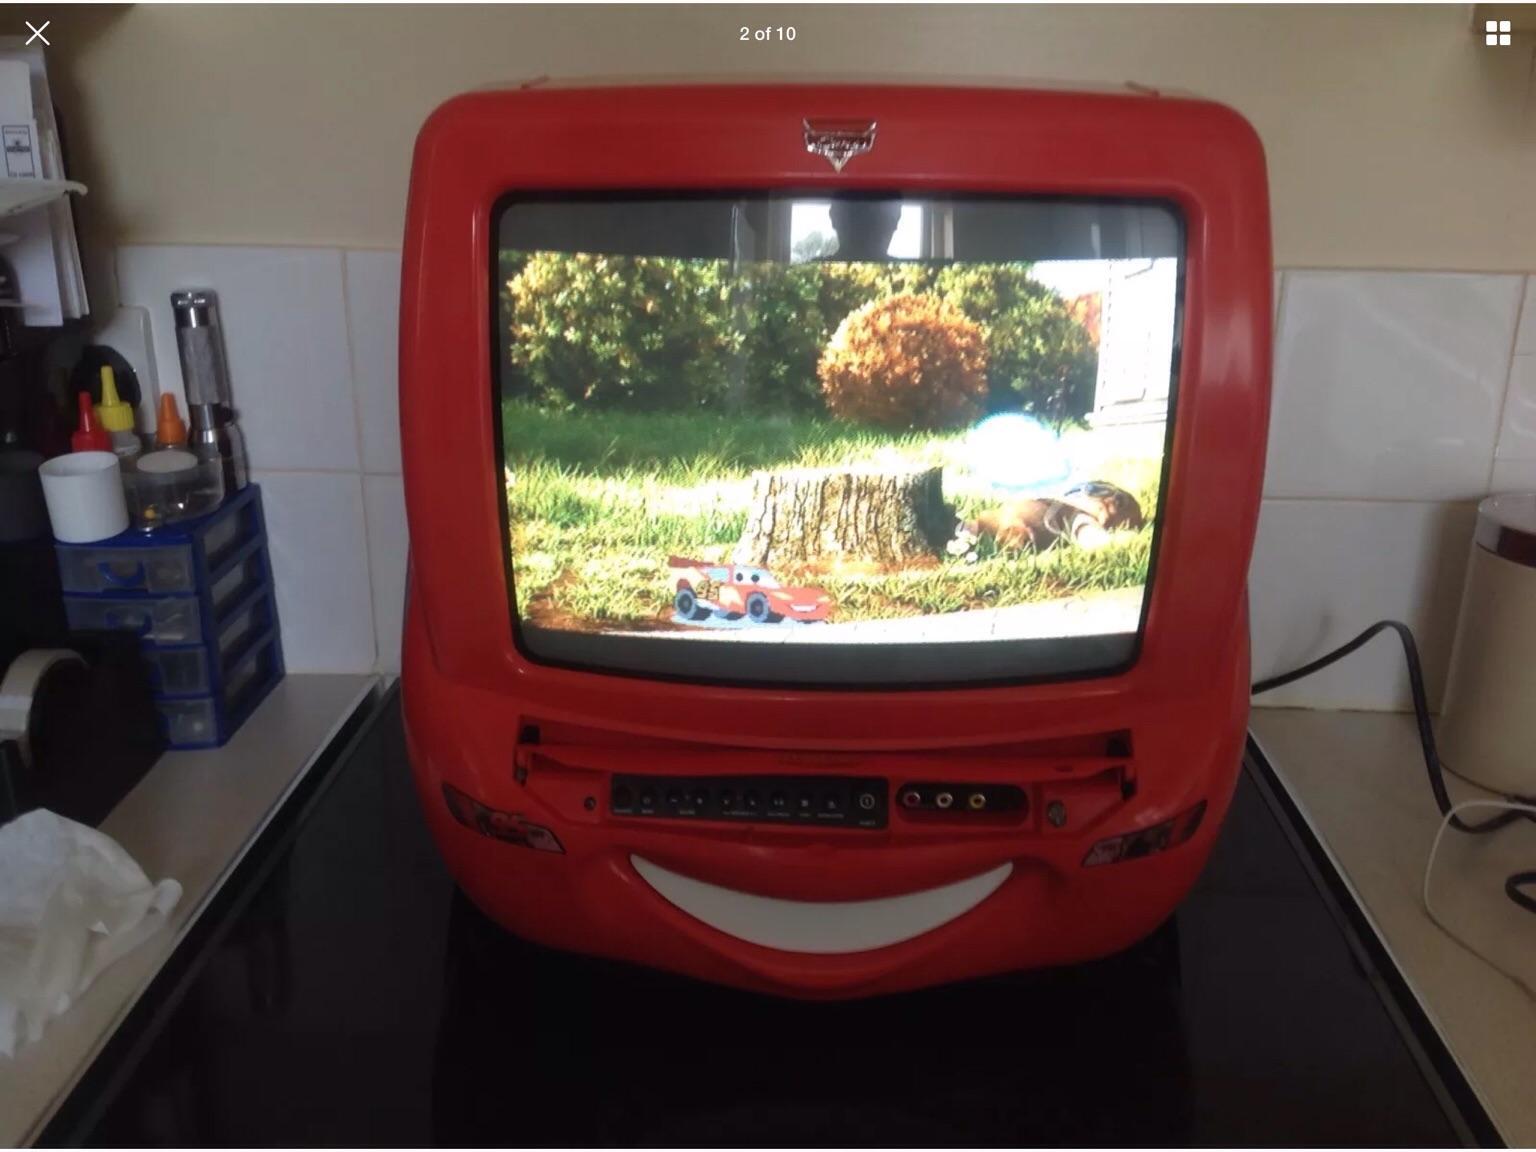 Disney Cars Lightning Mcqueen Tv Dvd Player In Ls29 Bradford For 25 00 For Sale Shpock